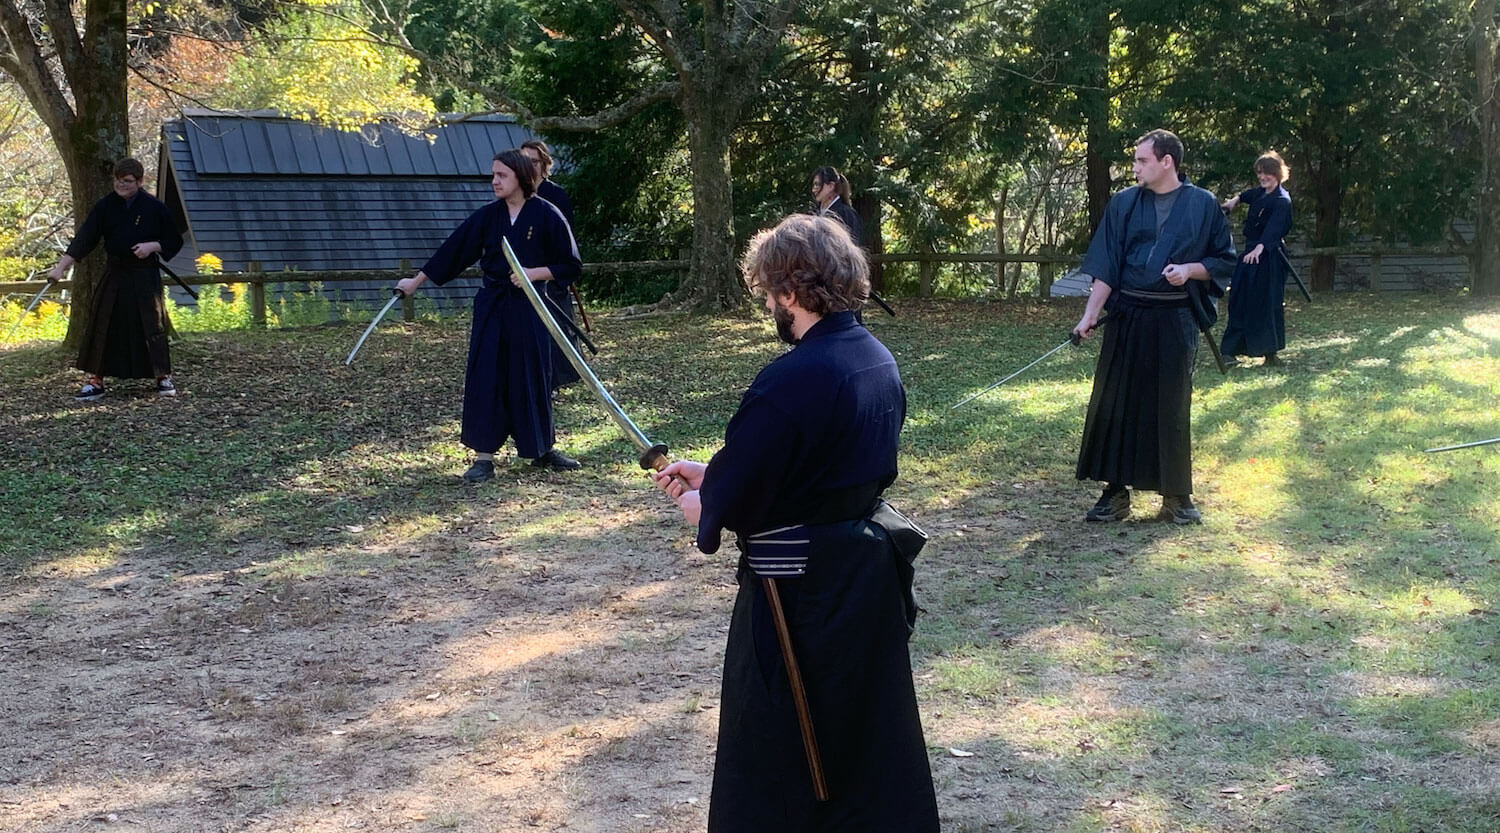 Samurai Training